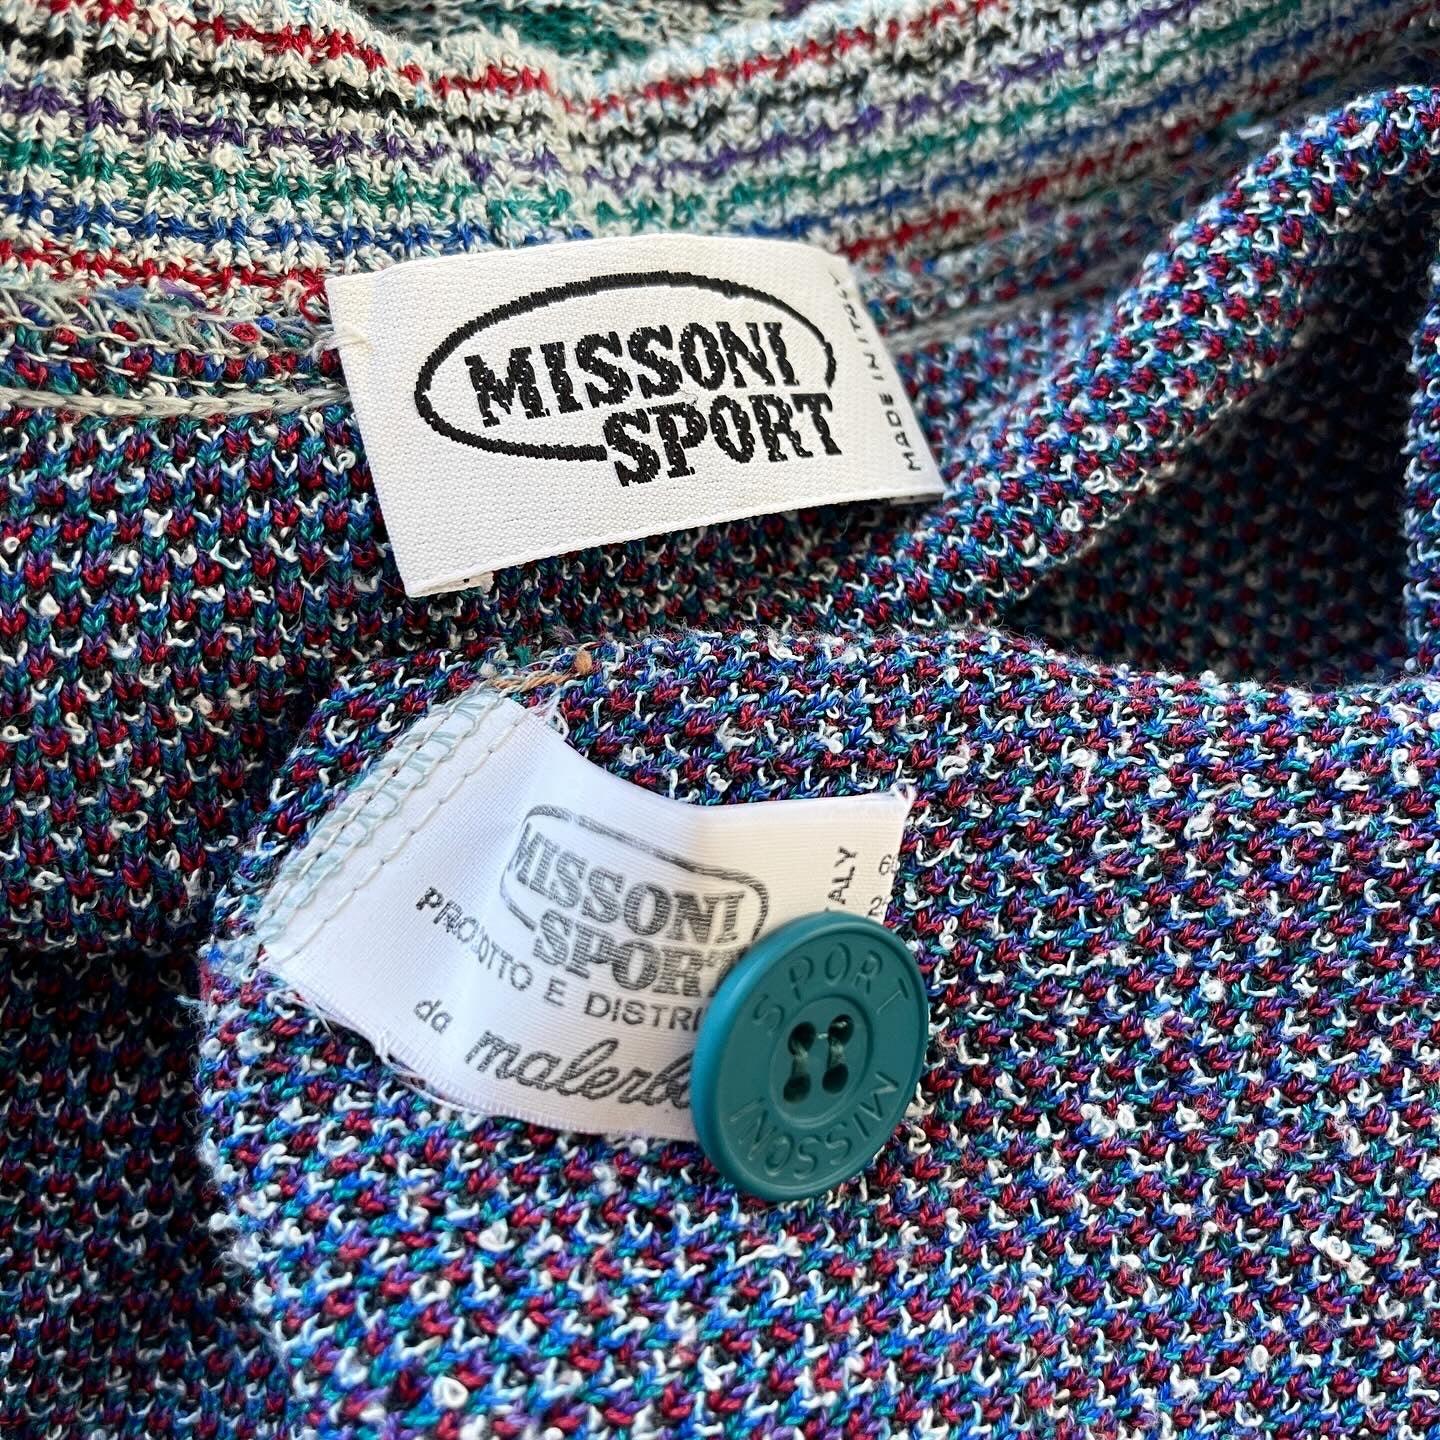 MISSONI SPORT - MISSONI SPORT Vintage Cardigan - AVVIIVVA.COM